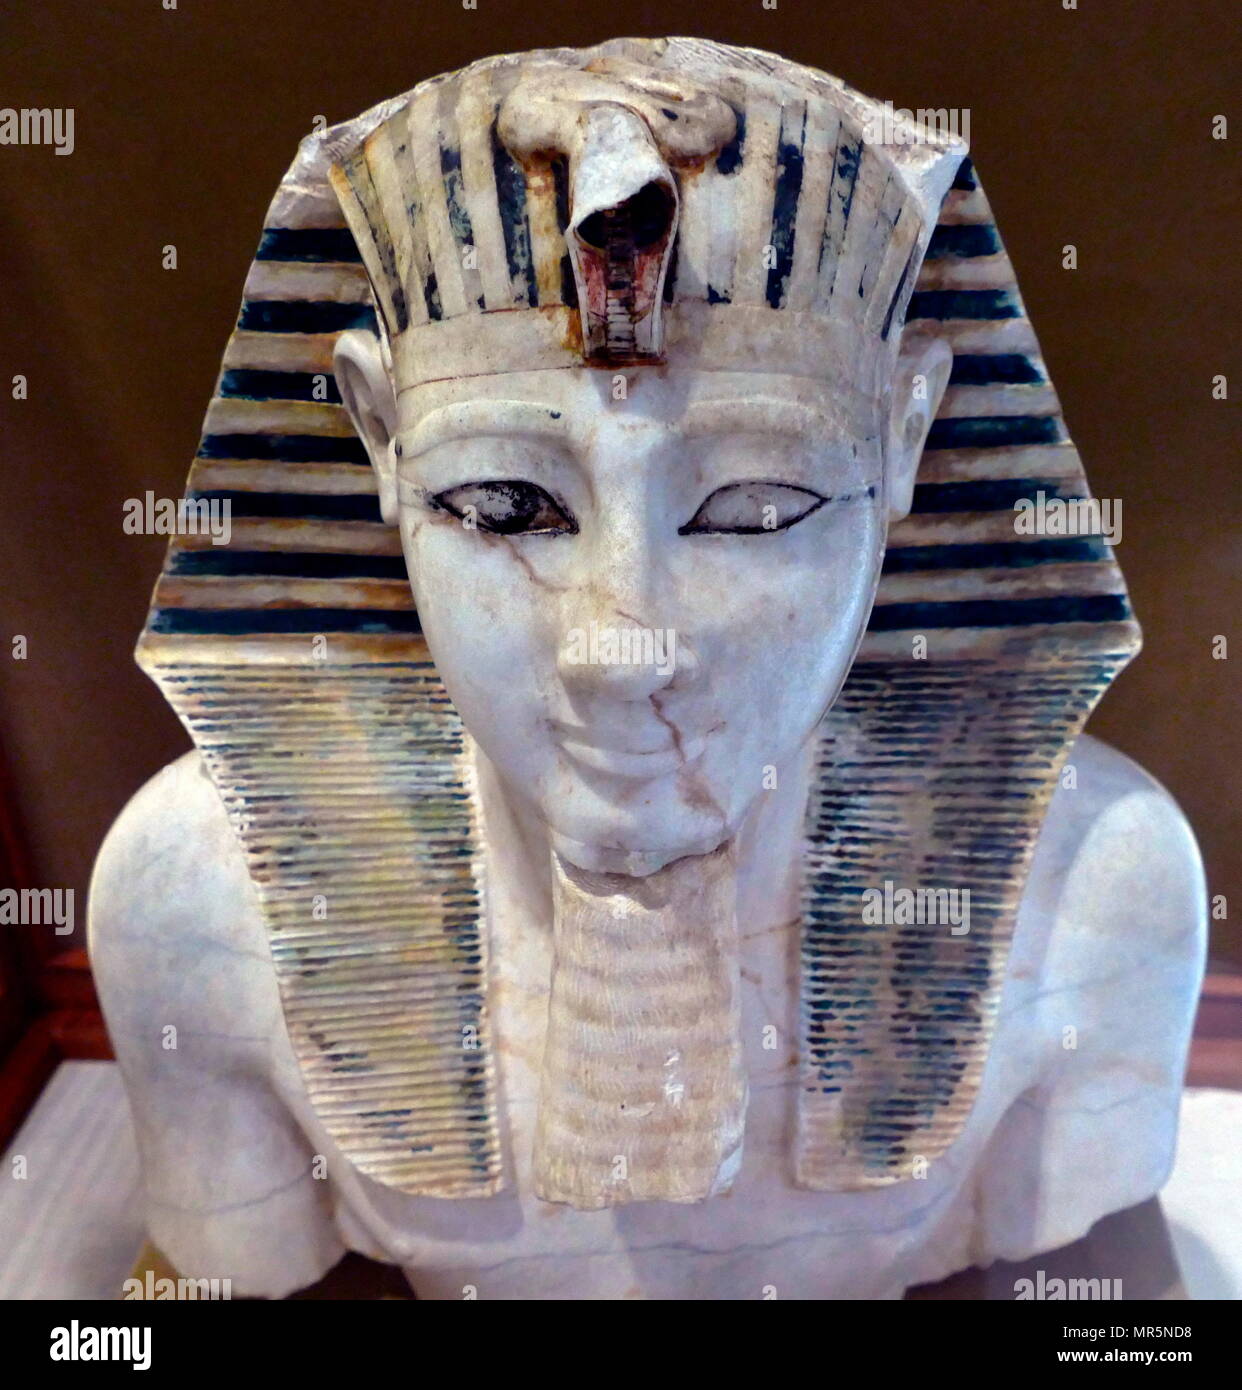 Leiter des Tutmosis III; Alabaster; 18. Dynastie; Neues Reich. Gefunden am Totentempel von Mentuhotep II. in Deir el Bahri, Ägypten. Stockfoto